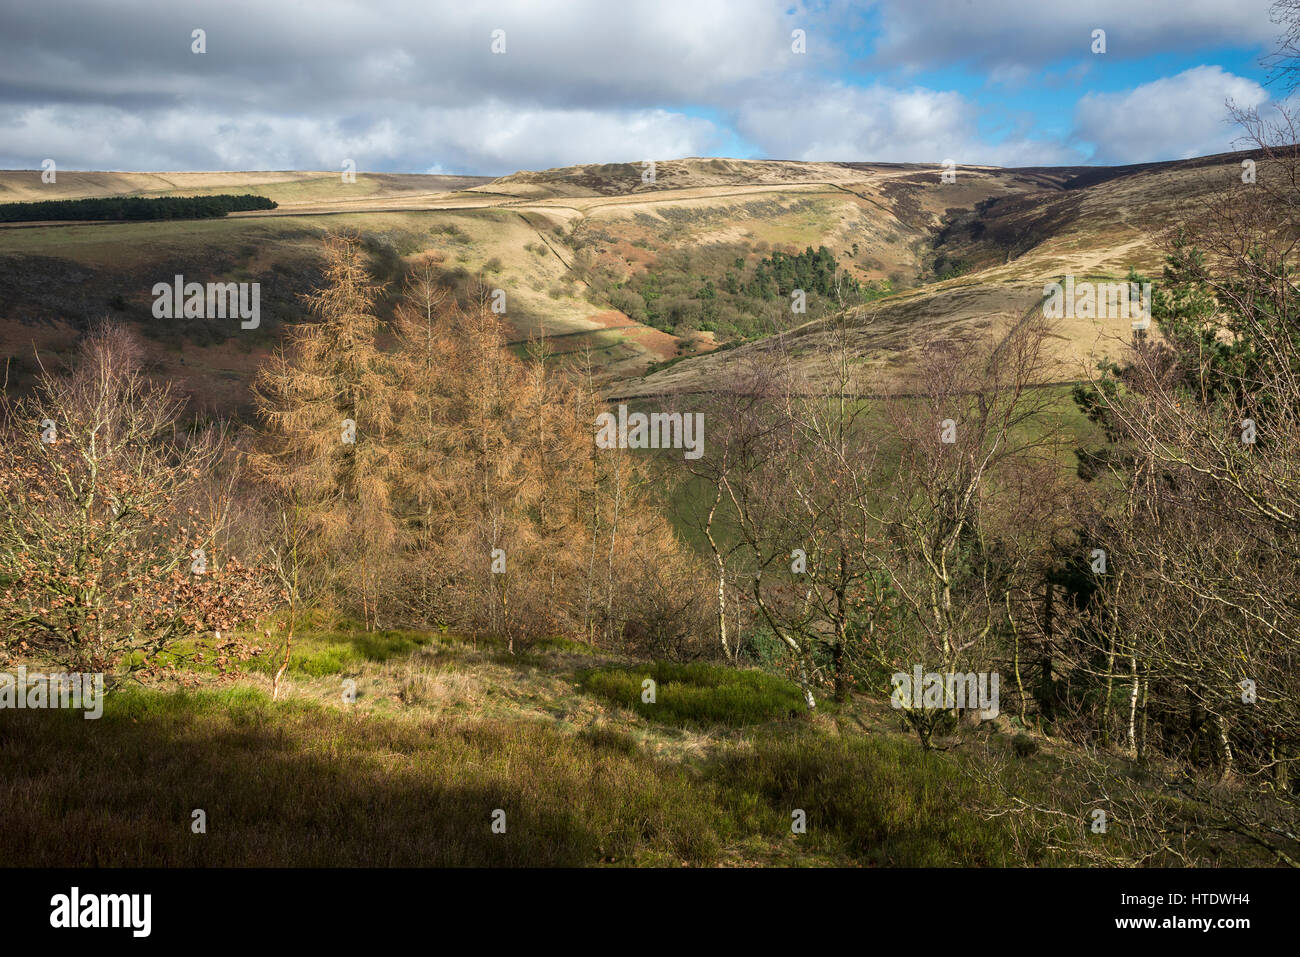 Schöne Aussicht vom Shire Hill in der Nähe von Glossop. Zeitigen Frühjahr Landschaft am Rande der Pennines im Norden Englands. Stockfoto